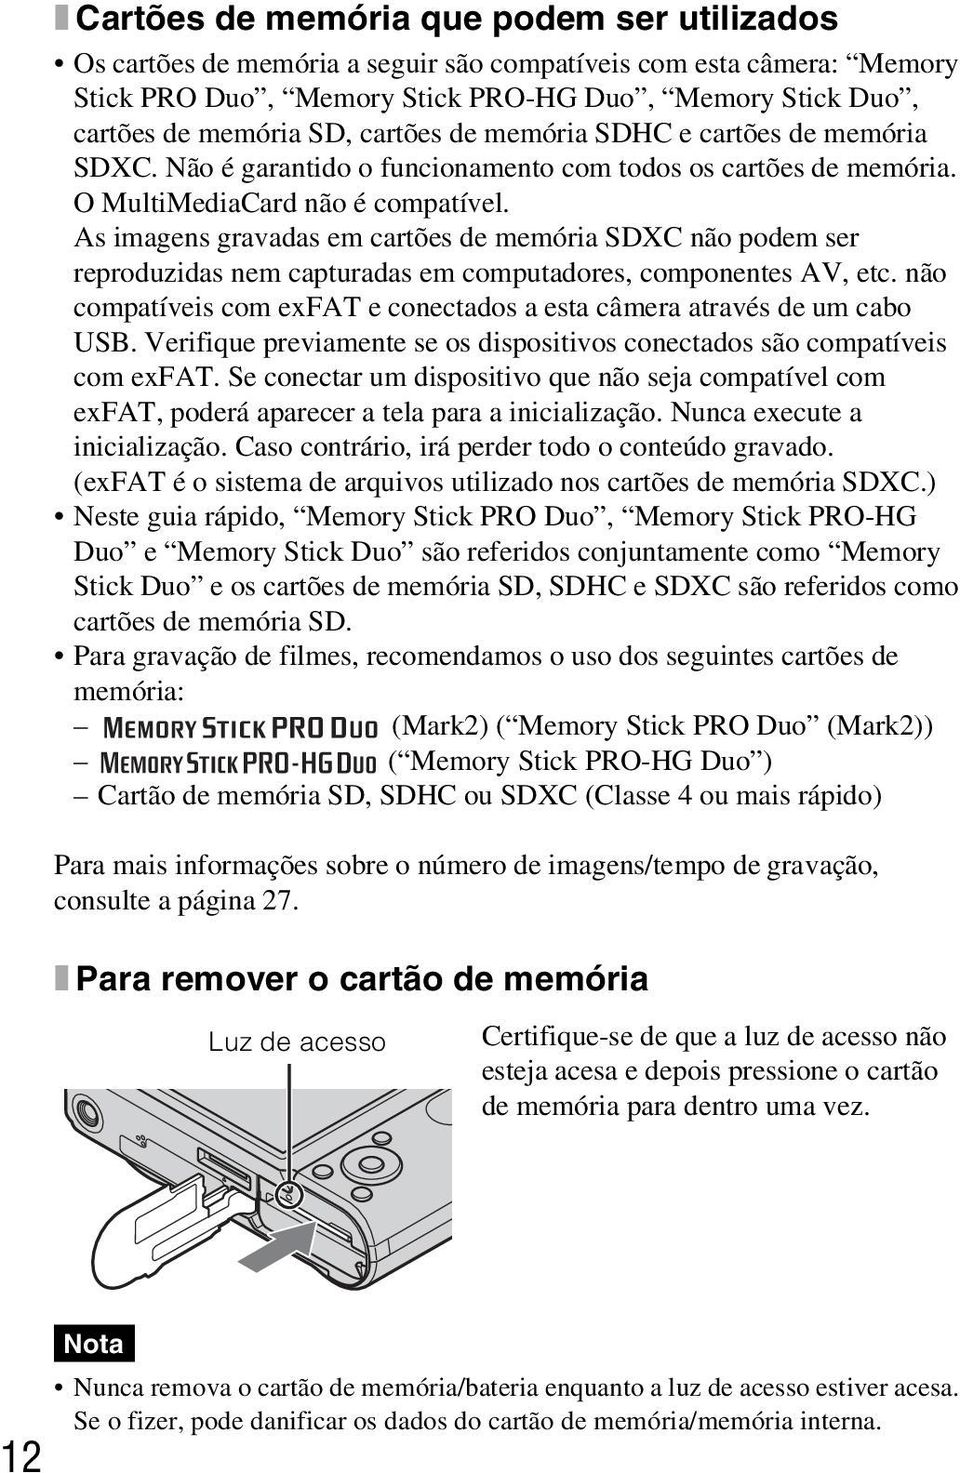 As imagens gravadas em cartões de memória SDXC não podem ser reproduzidas nem capturadas em computadores, componentes AV, etc.